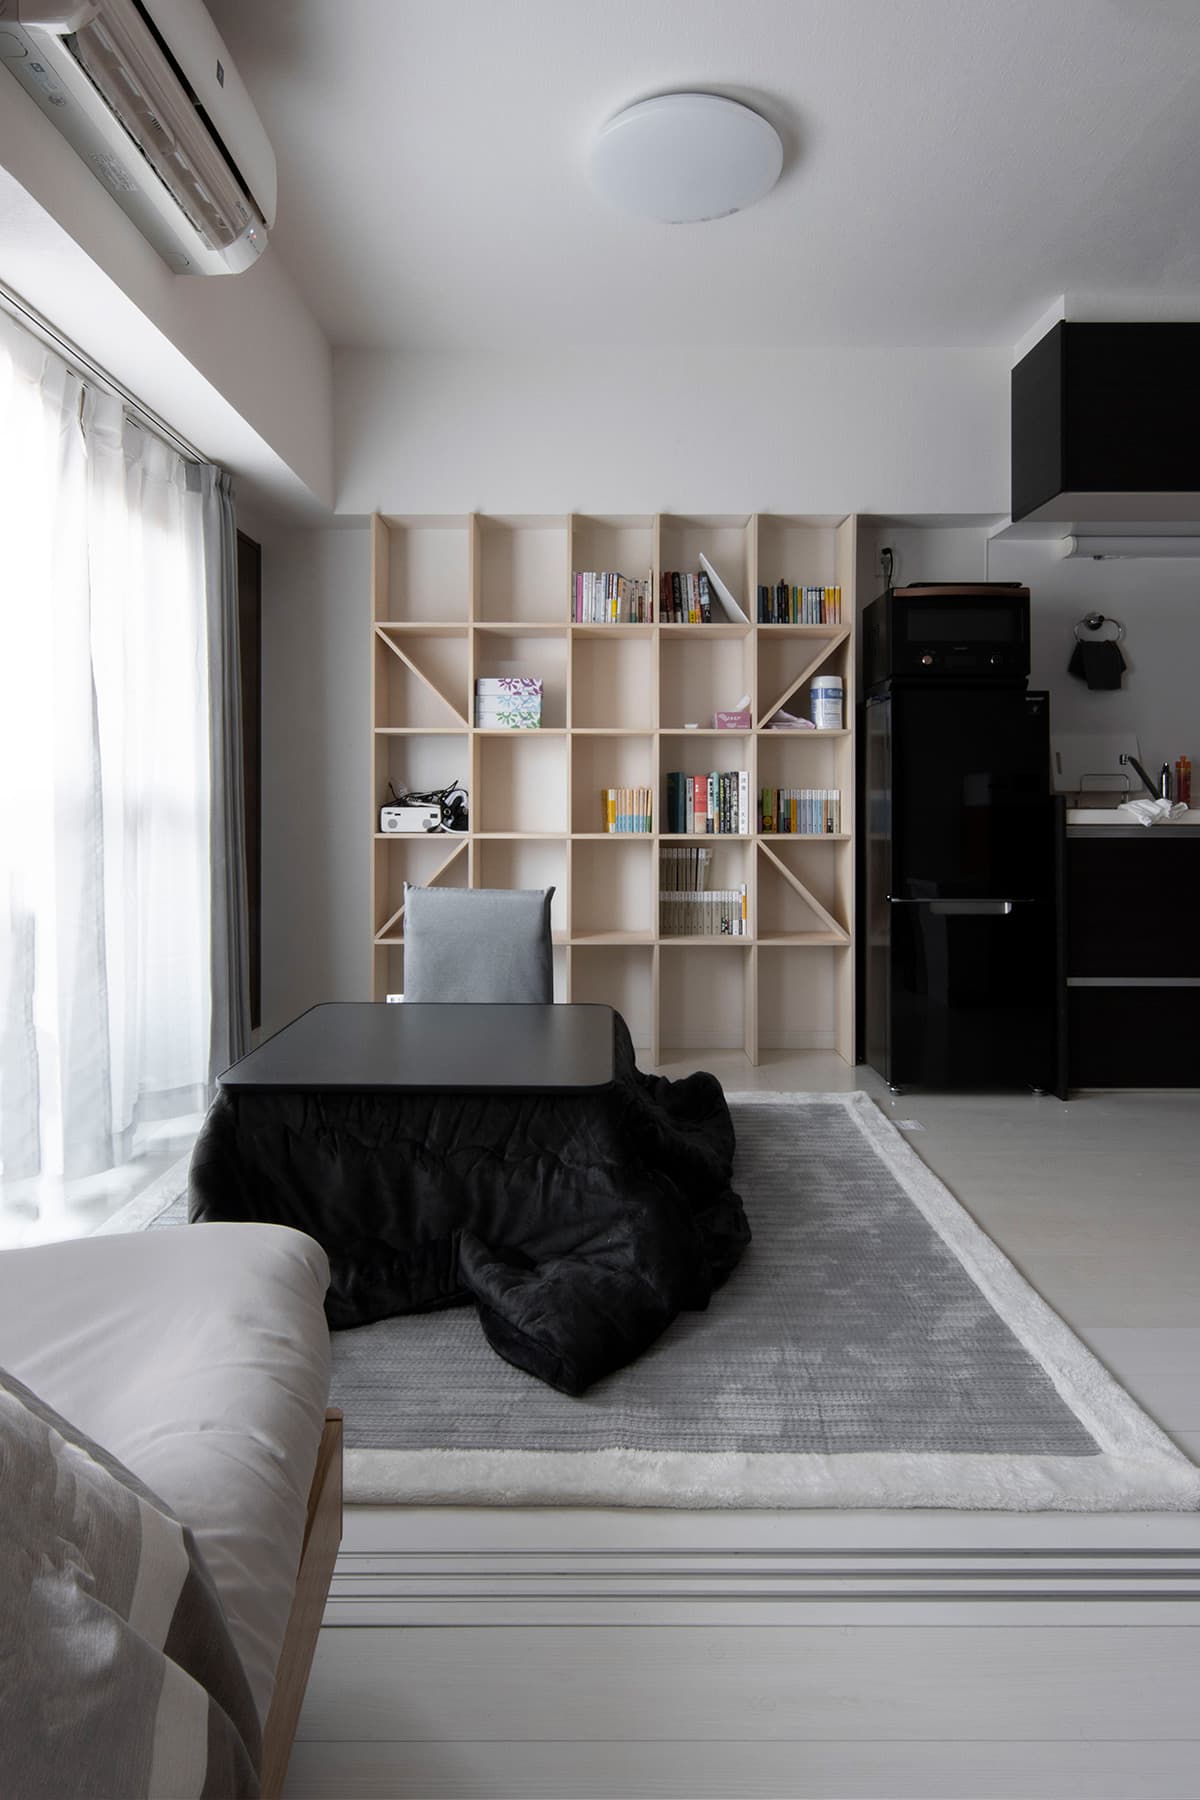 生活空間と学習空間を綺麗に使い分ける | 壁一面の本棚 奥行250 / Shelf | マルゲリータ使用事例